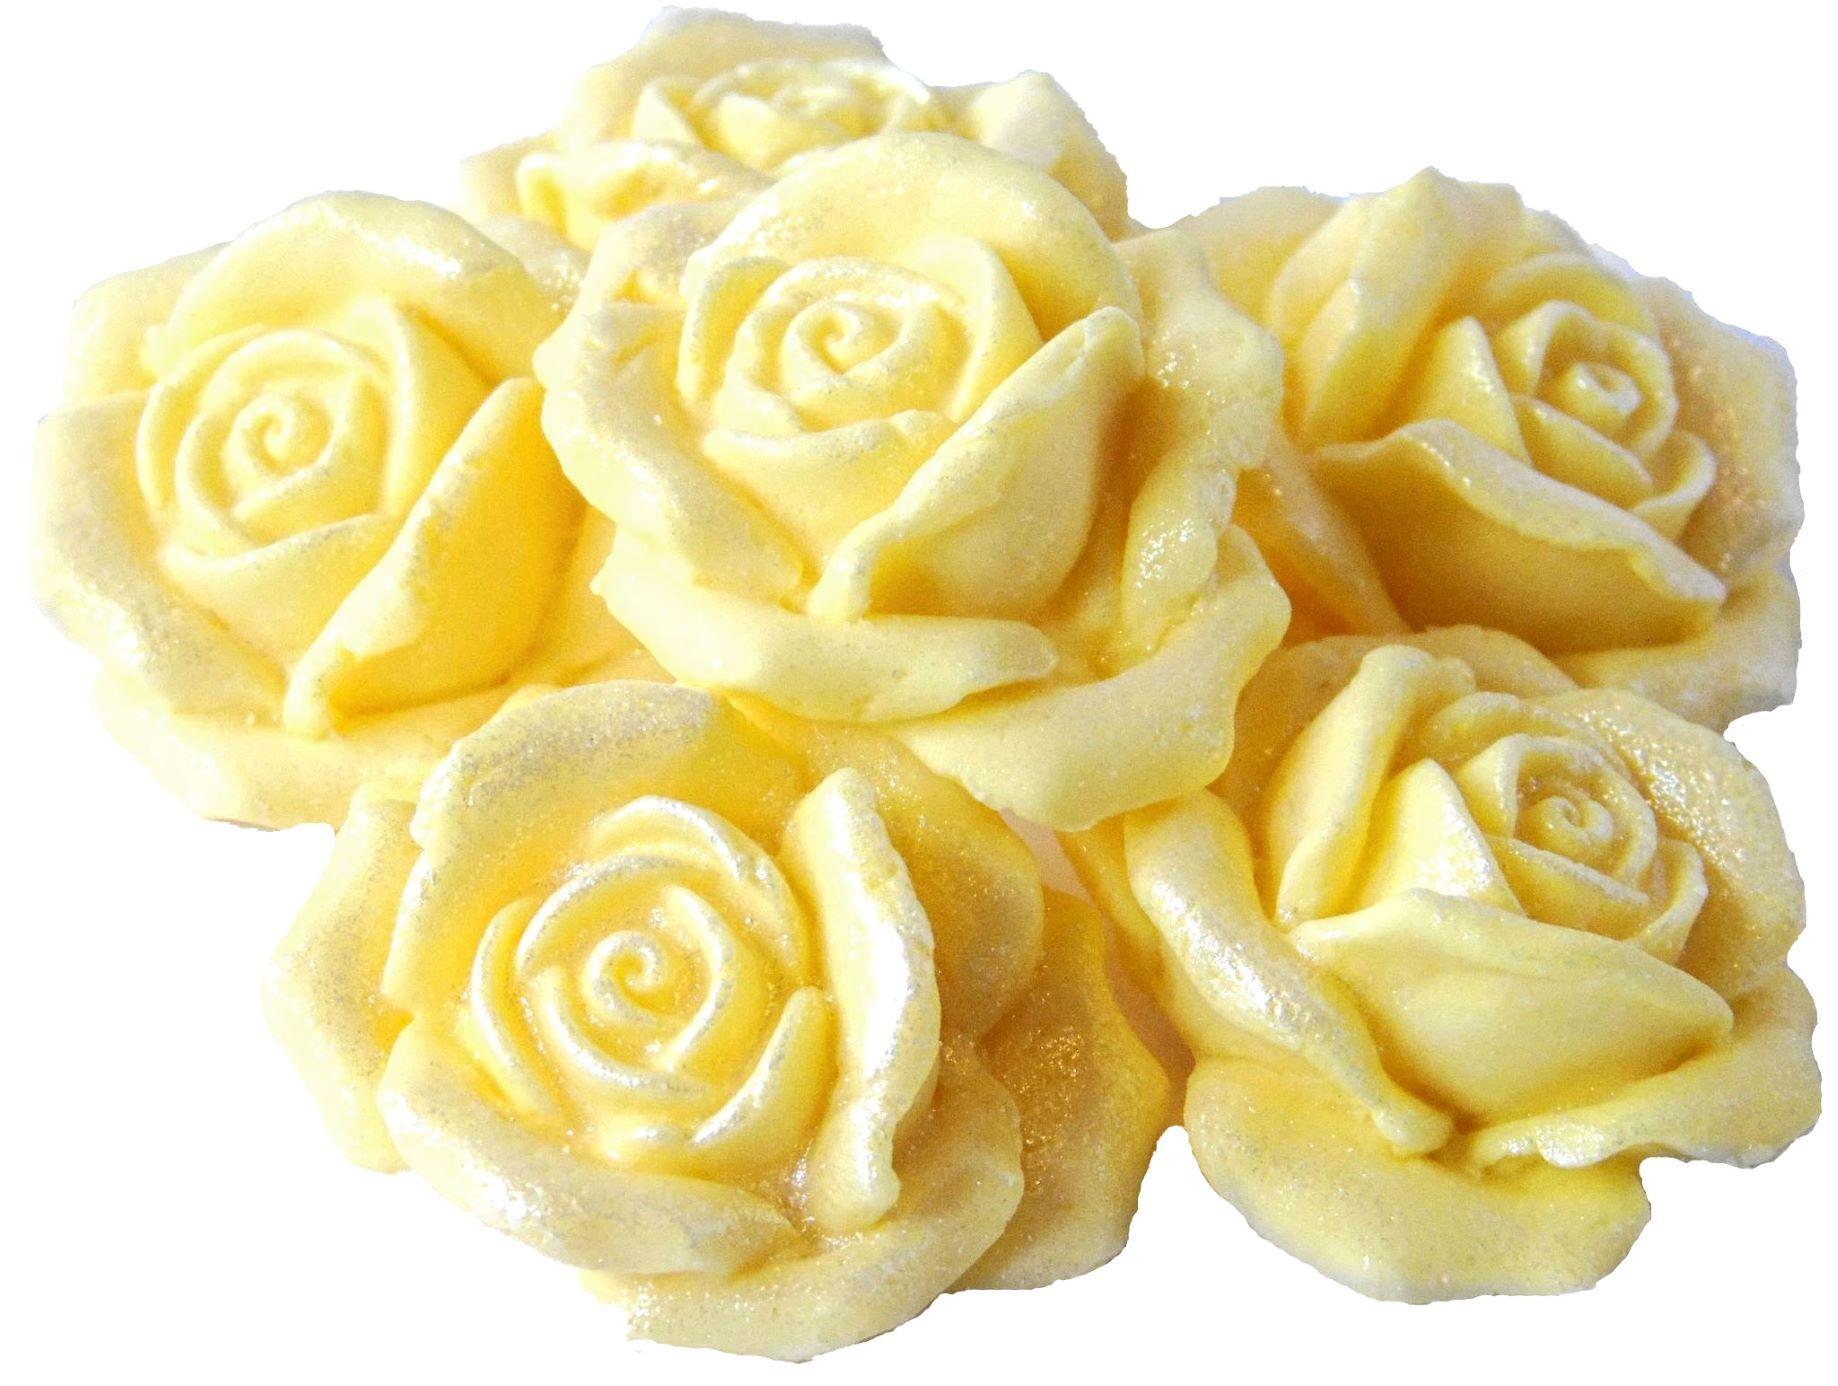 6 Edible Large Lemon Glittered Roses Vegan Cake Topper Decorations